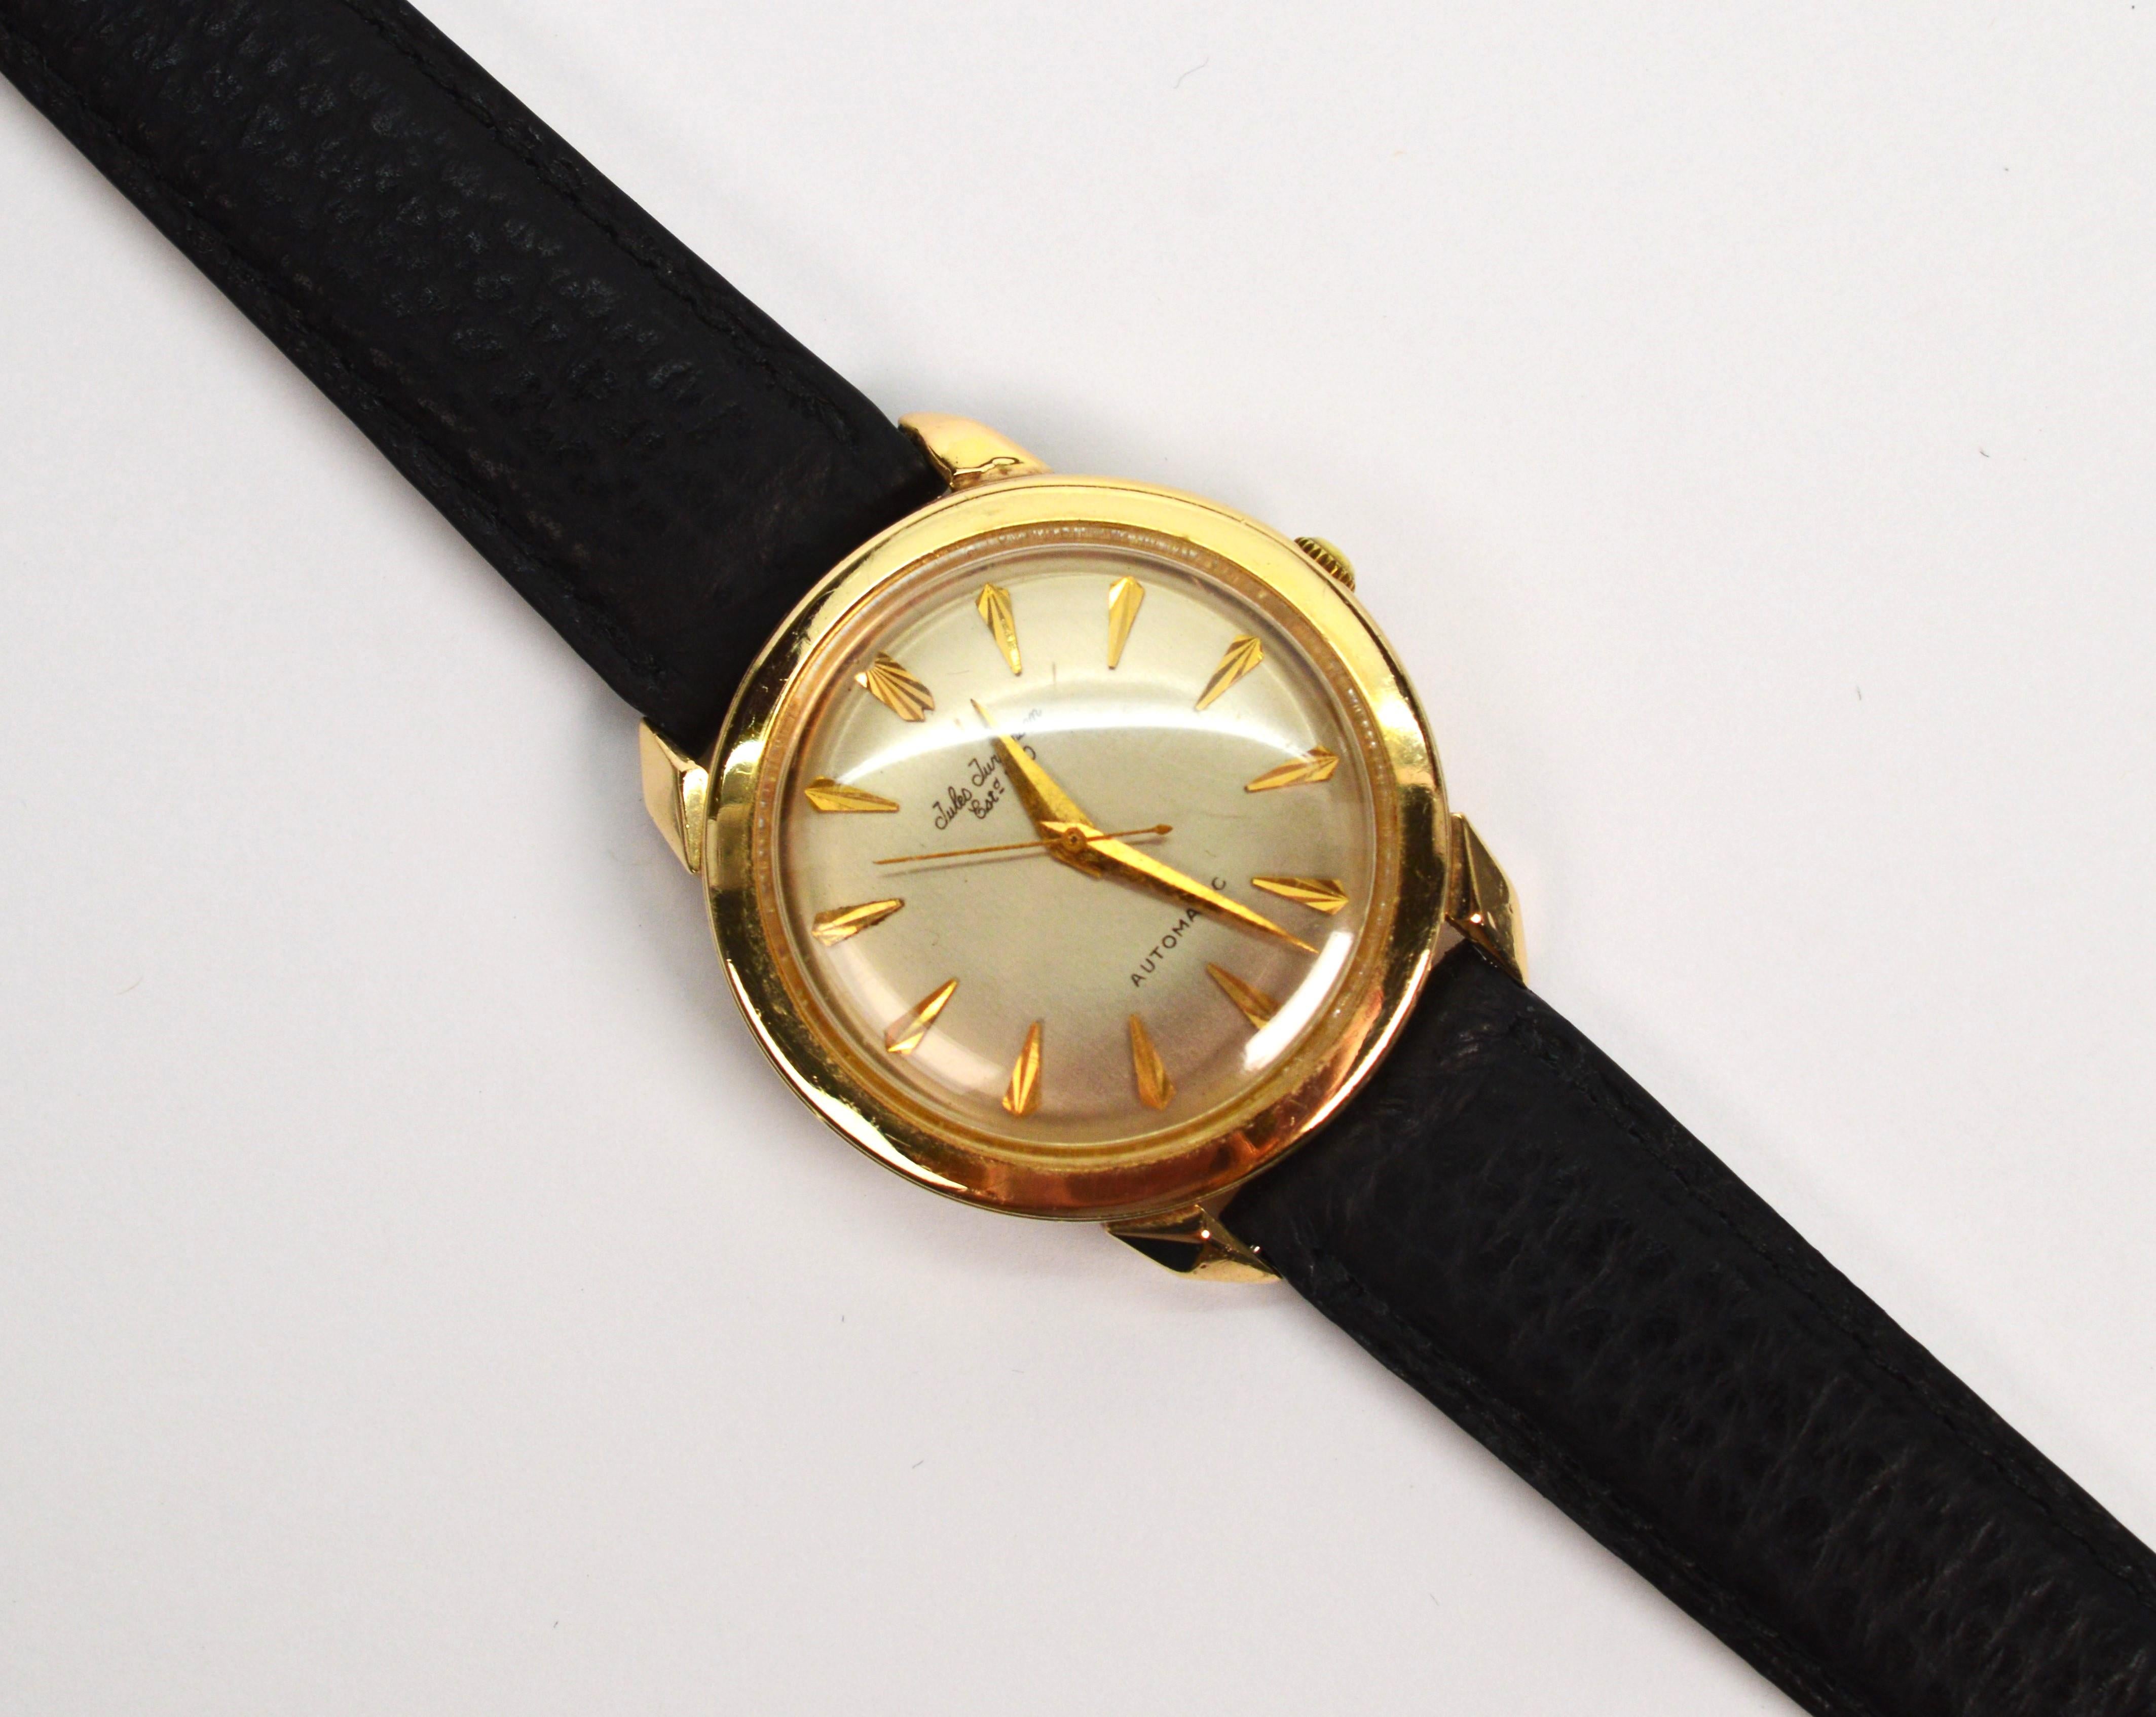 Quintessenz des Designs der 1950er Jahre von Jules Jurgensen, einem bekannten Schweizer Uhrenhersteller. Diese 34 mm große Retro-Schönheit aus 14 Karat Gelbgold hat ein Automatikwerk mit 17 Steinen, Seriennummer 300354. Die runde Gehäusenummer ist